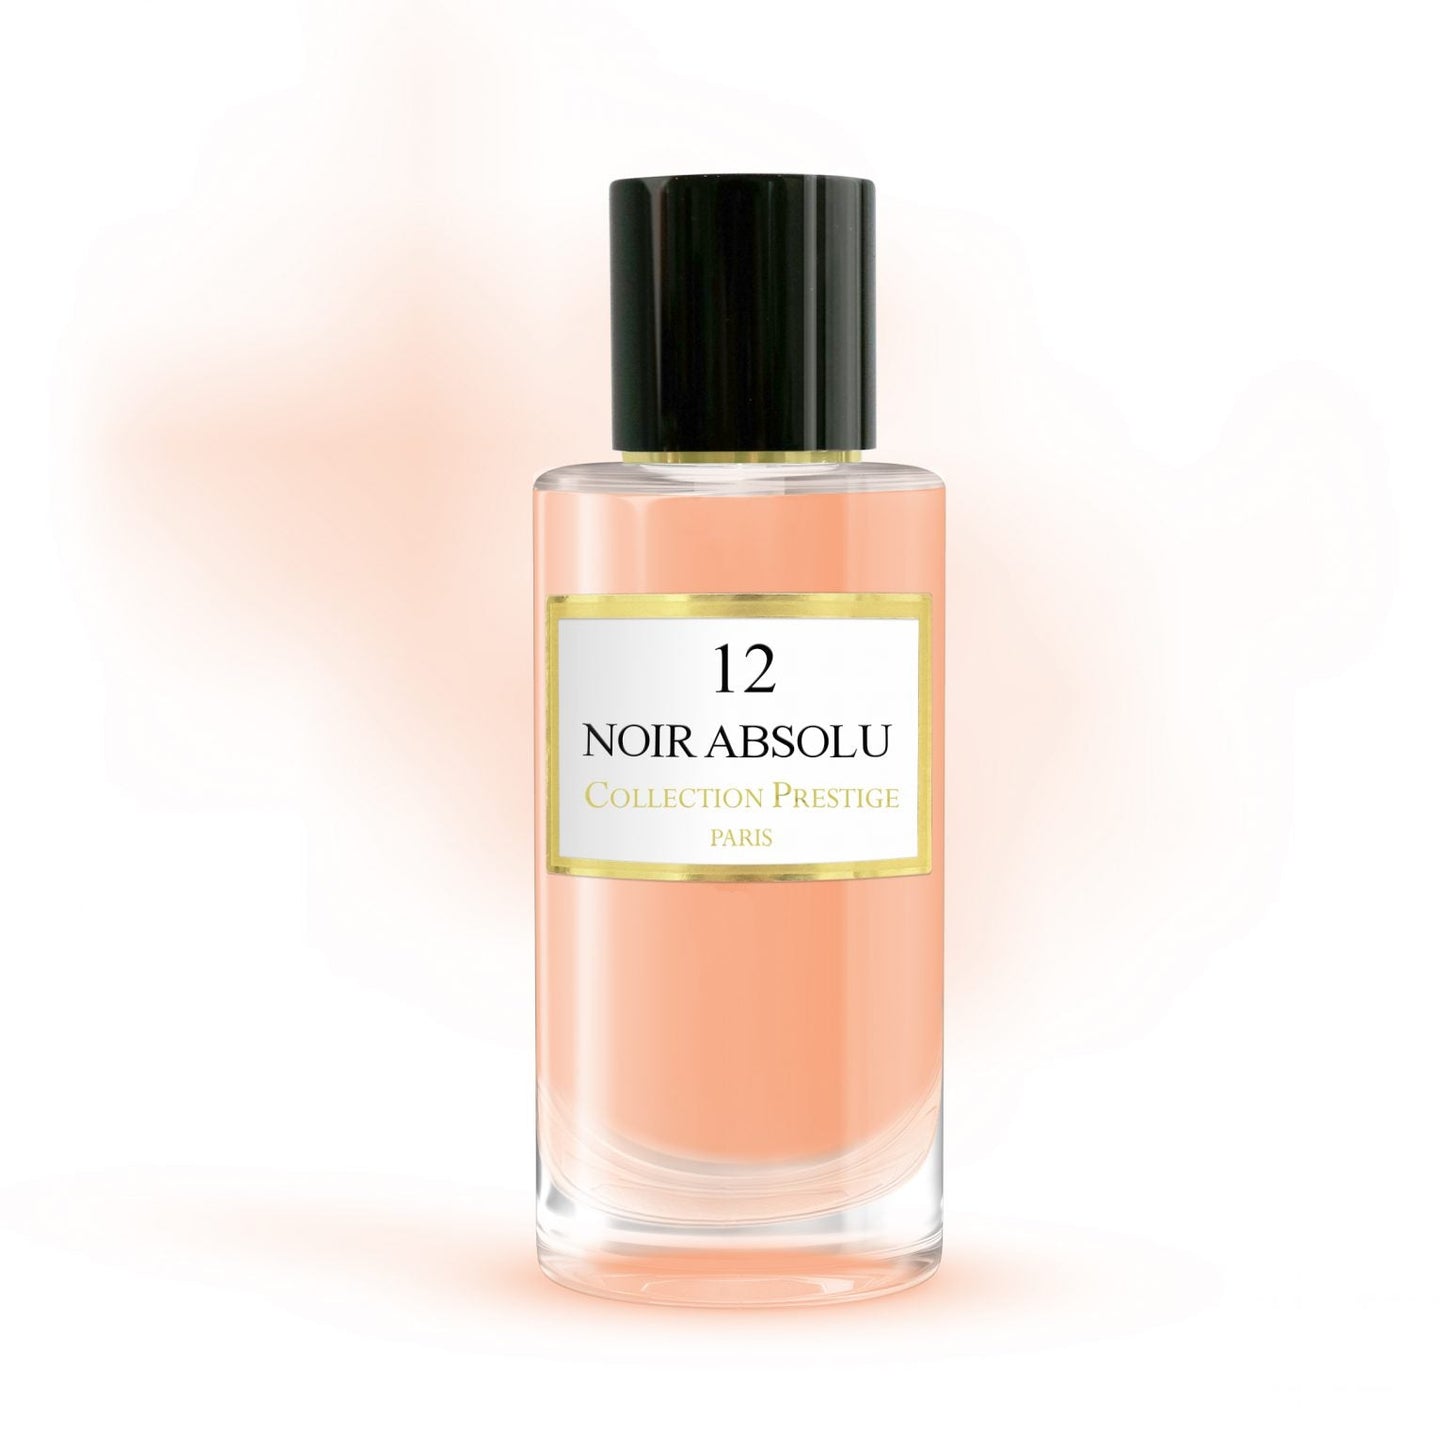 Nr 12 Noir Absolu Collection Prestige Paris - Eau de parfum (50ml)